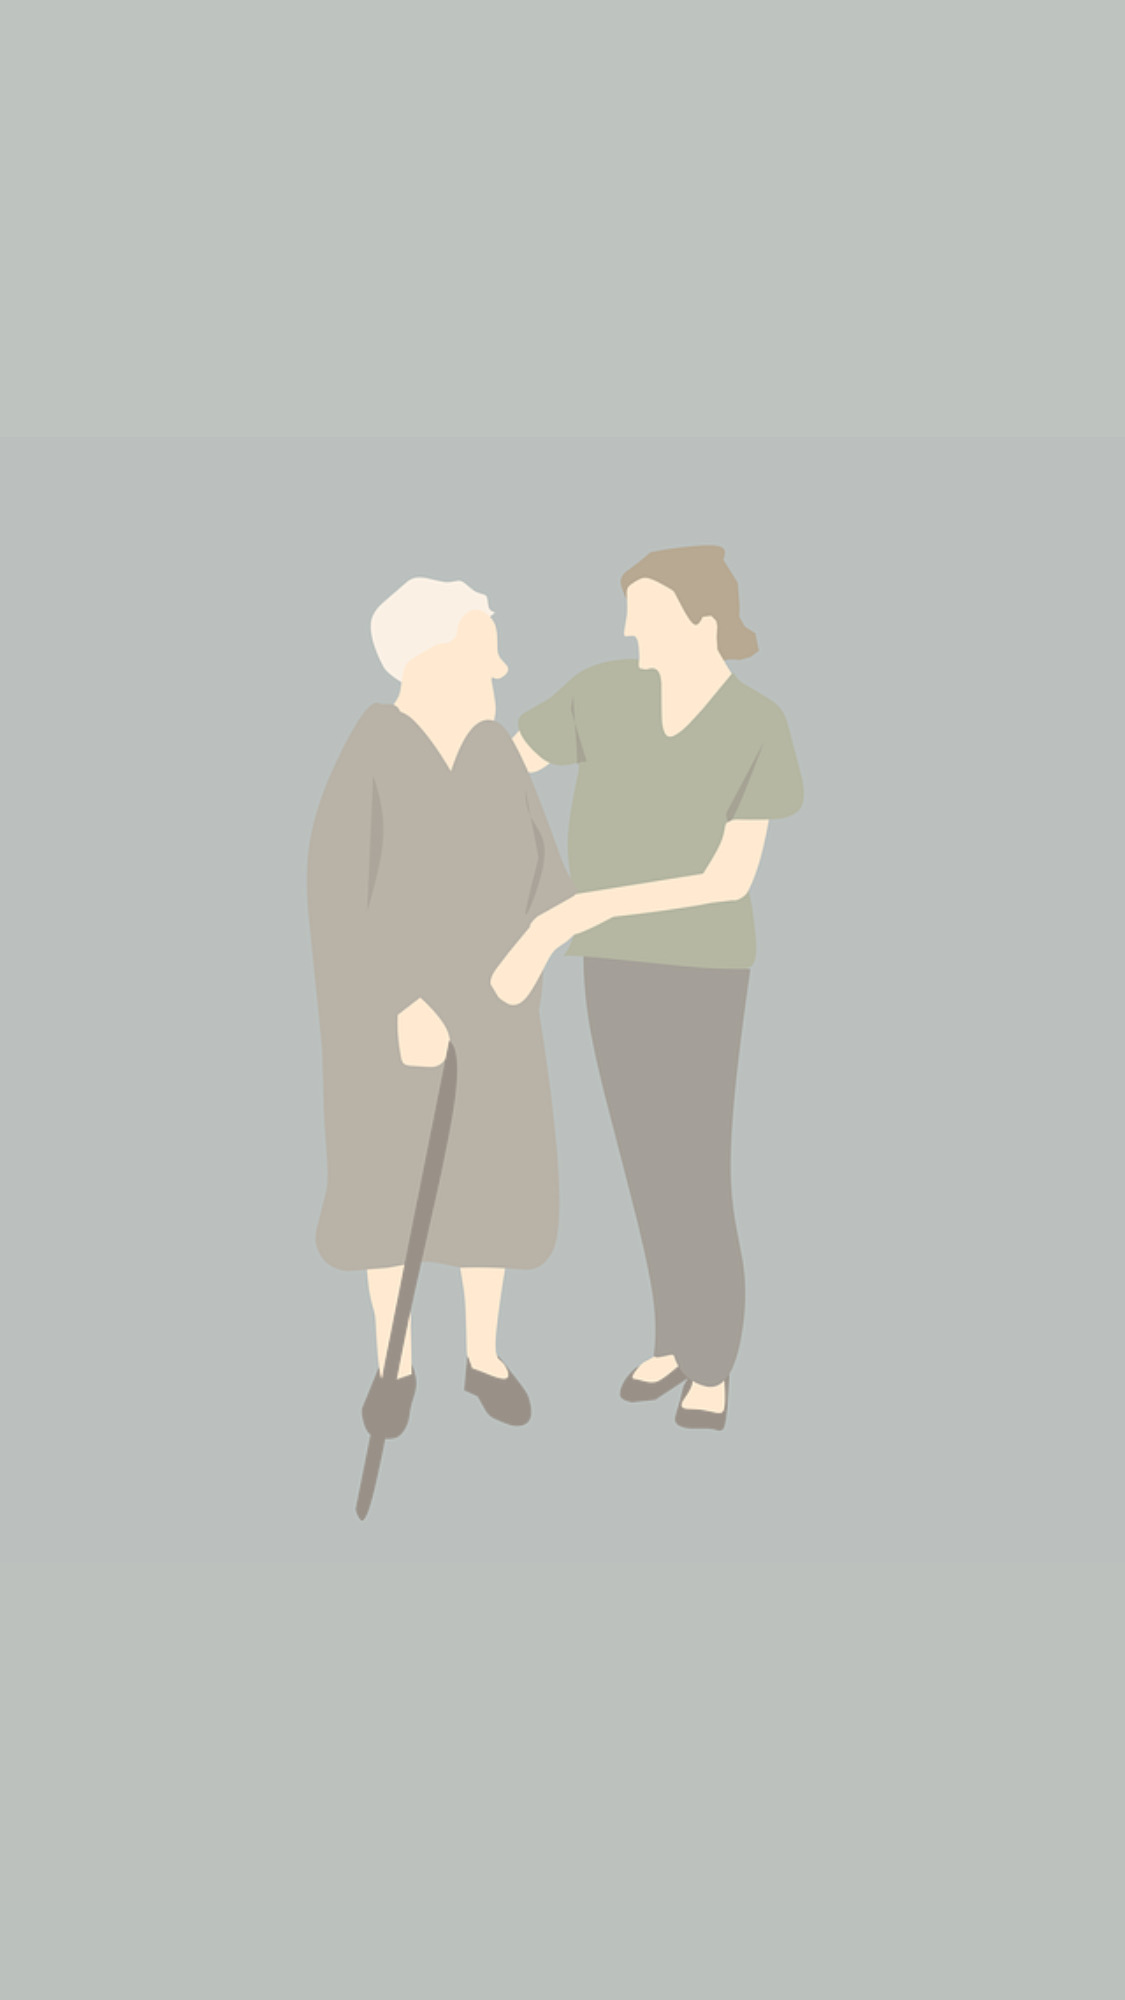 Plejebesøg tilbyder omsorg og tryghed, hvilket reducerer ensomhed og styrker følelsen af sikkerhed hos den besøgende